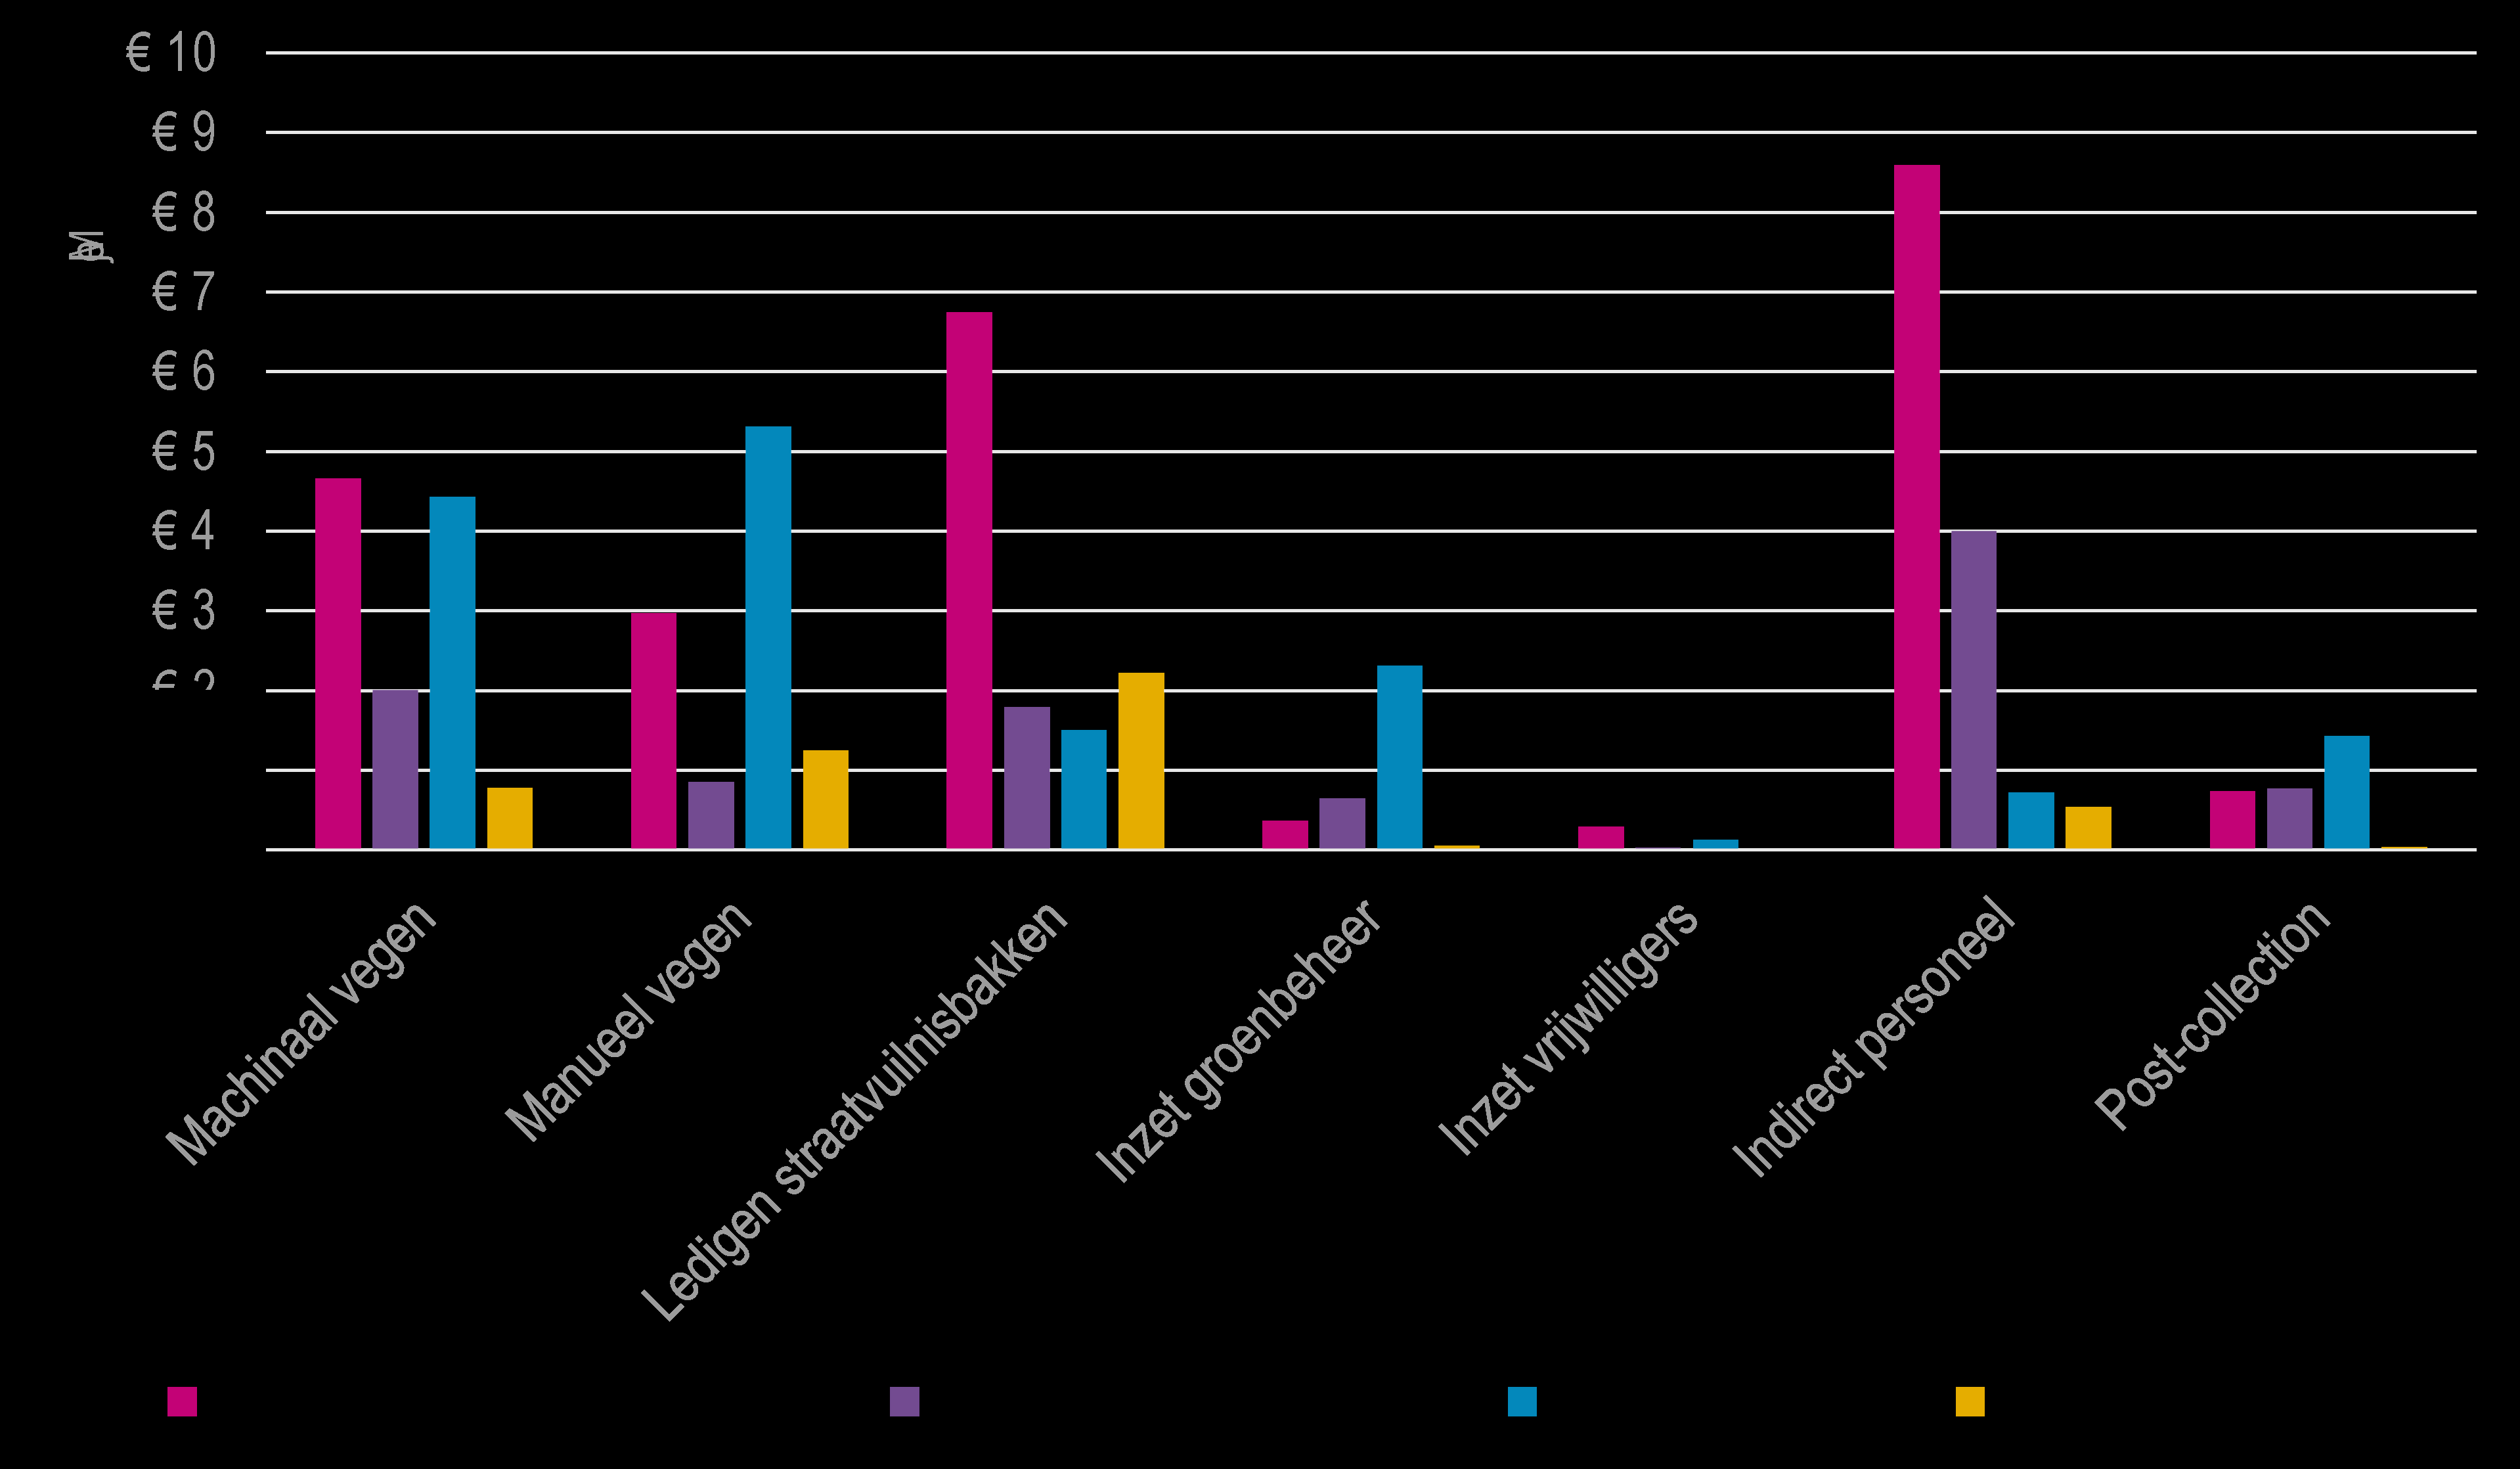 Vooral de kosten voor manueel vegen en ledigen van straatvuilnisbakken liggen in deze gemeenten aanzienlijk hoger dan in de andere strata.